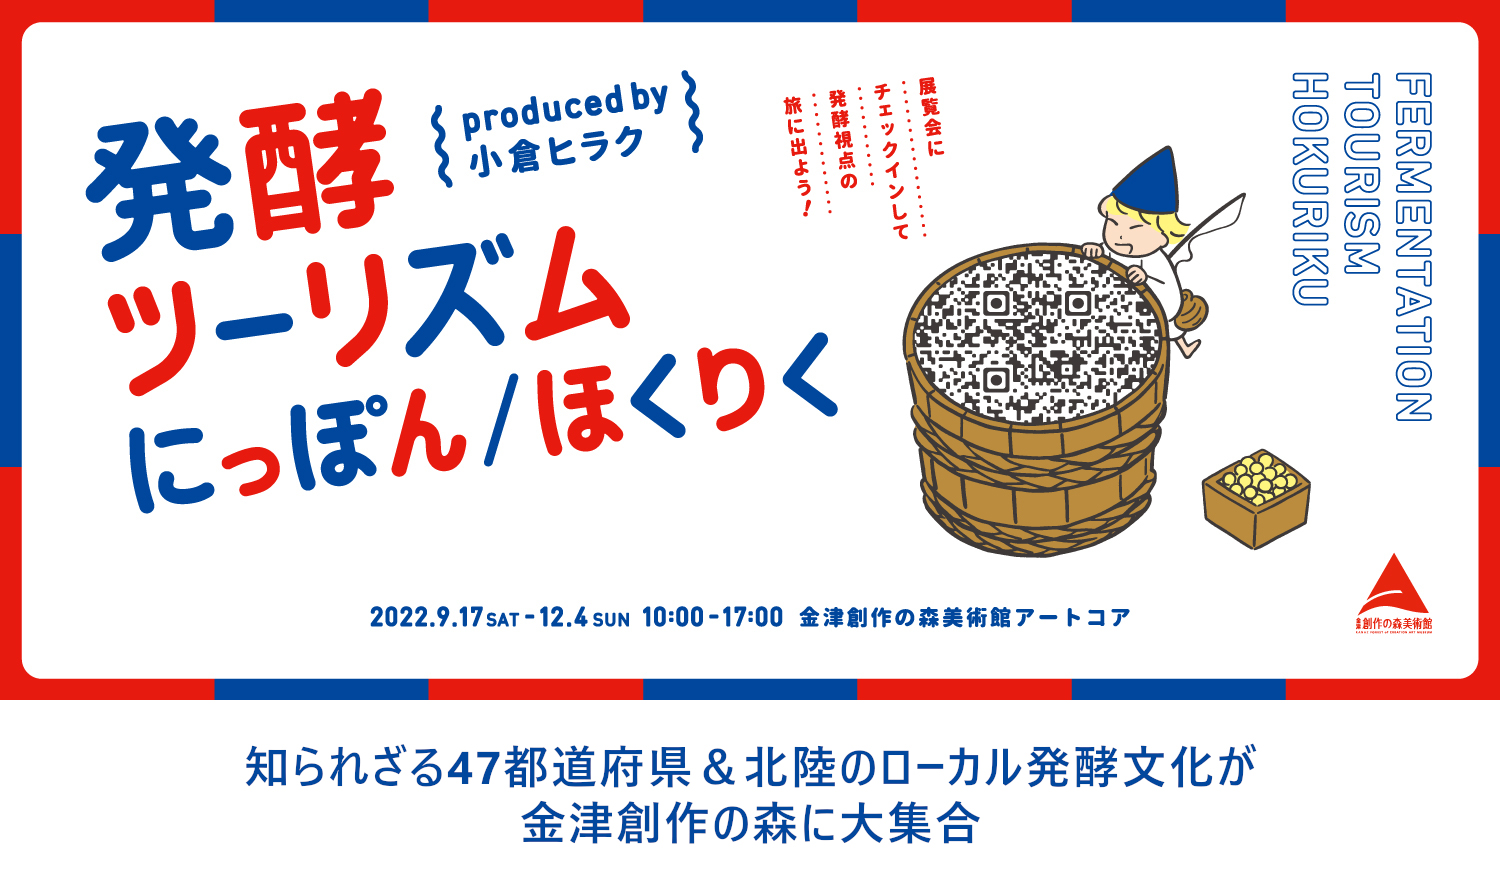 【公式】発酵ツーリズムにっぽん/ほくりく produced by 小倉ヒラク